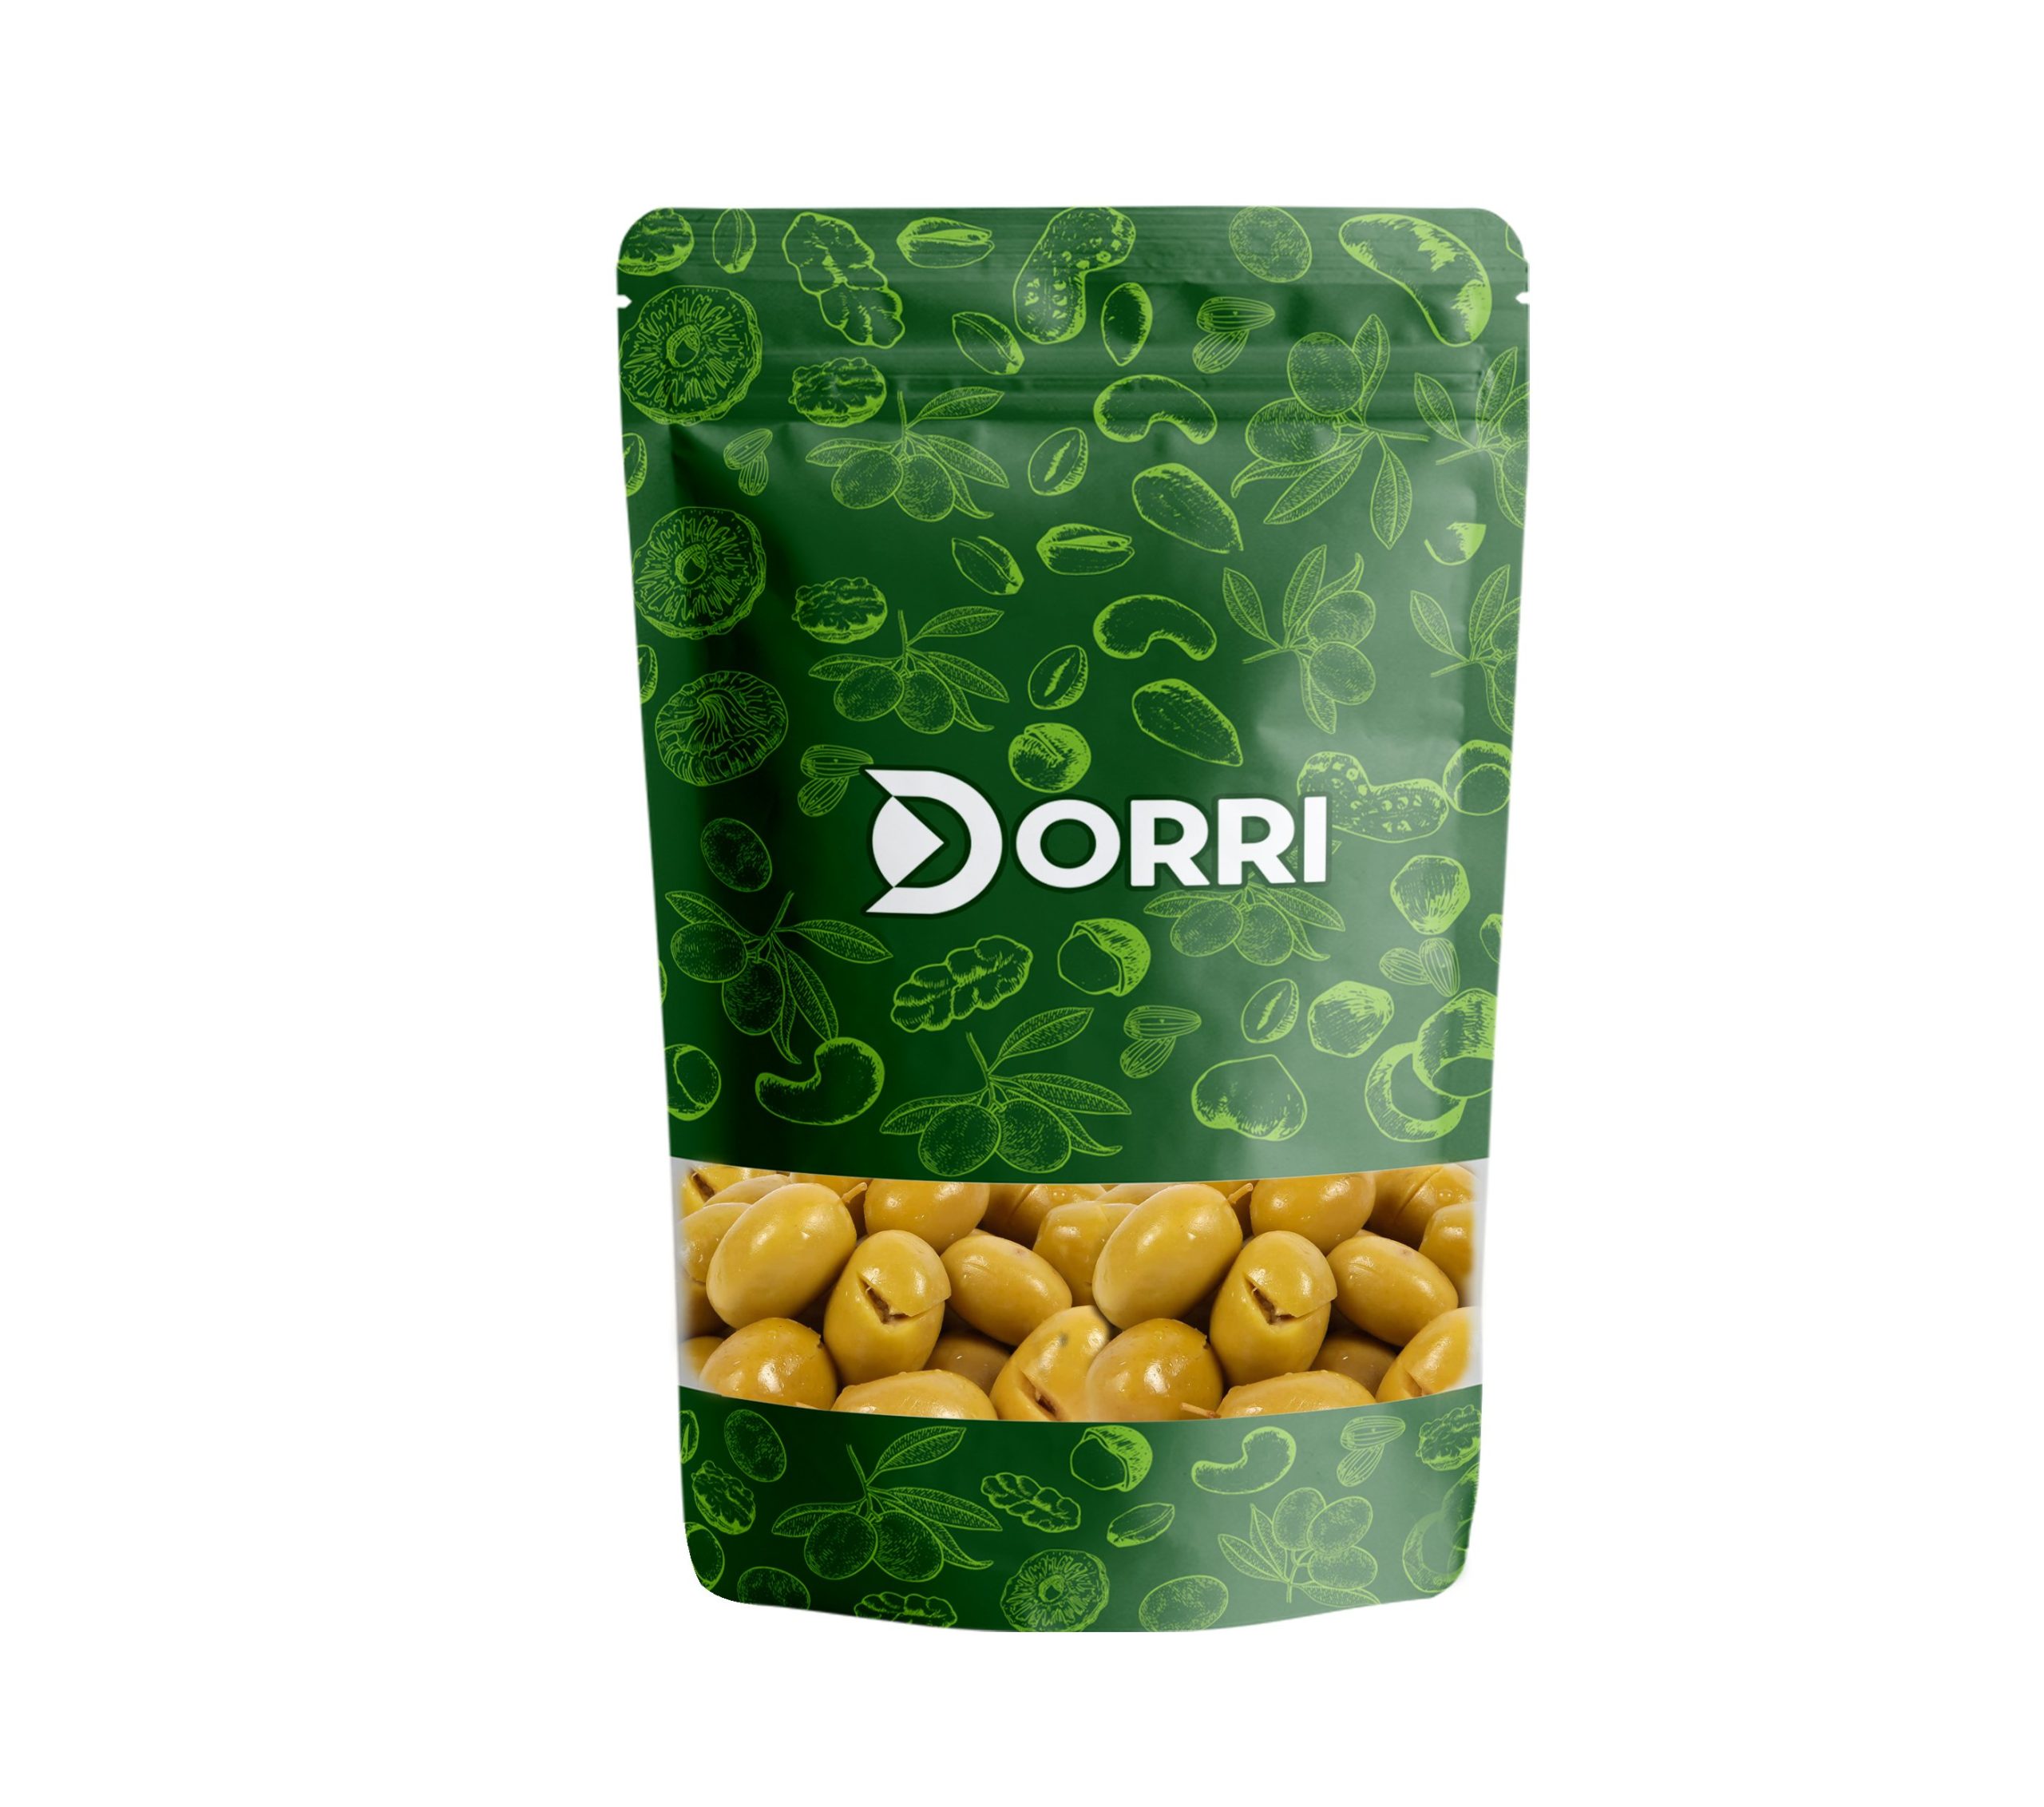 Dorri - Green Olives (Cracked)